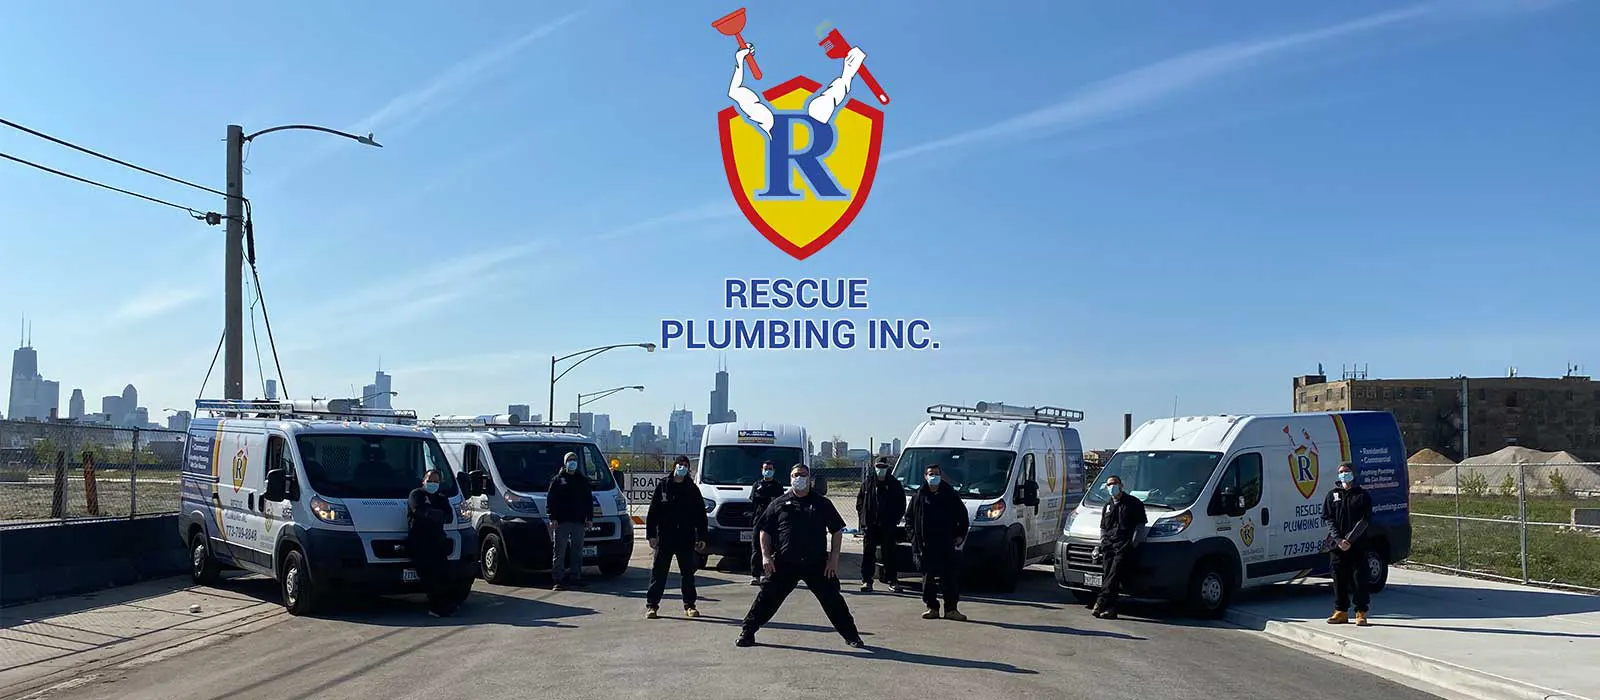 Let Rescue Plumbing rescue your plumbing fixtures